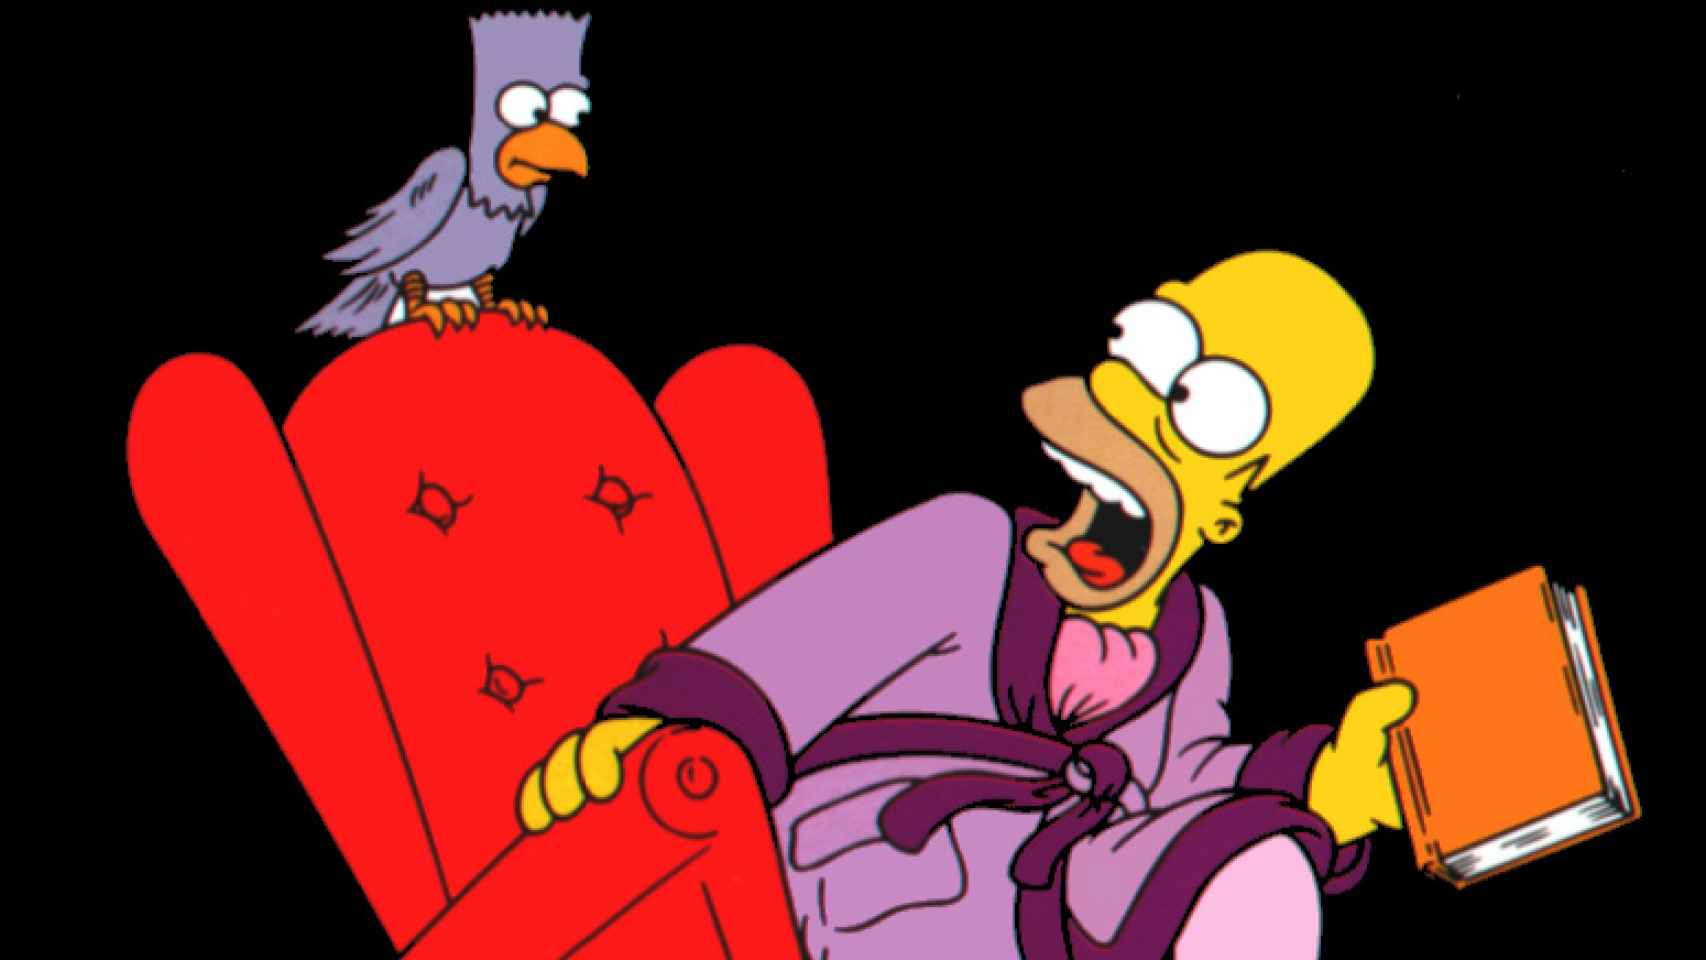 Bart y Homer Simpson parodian 'El cuervo' de Edgard Allan Poe